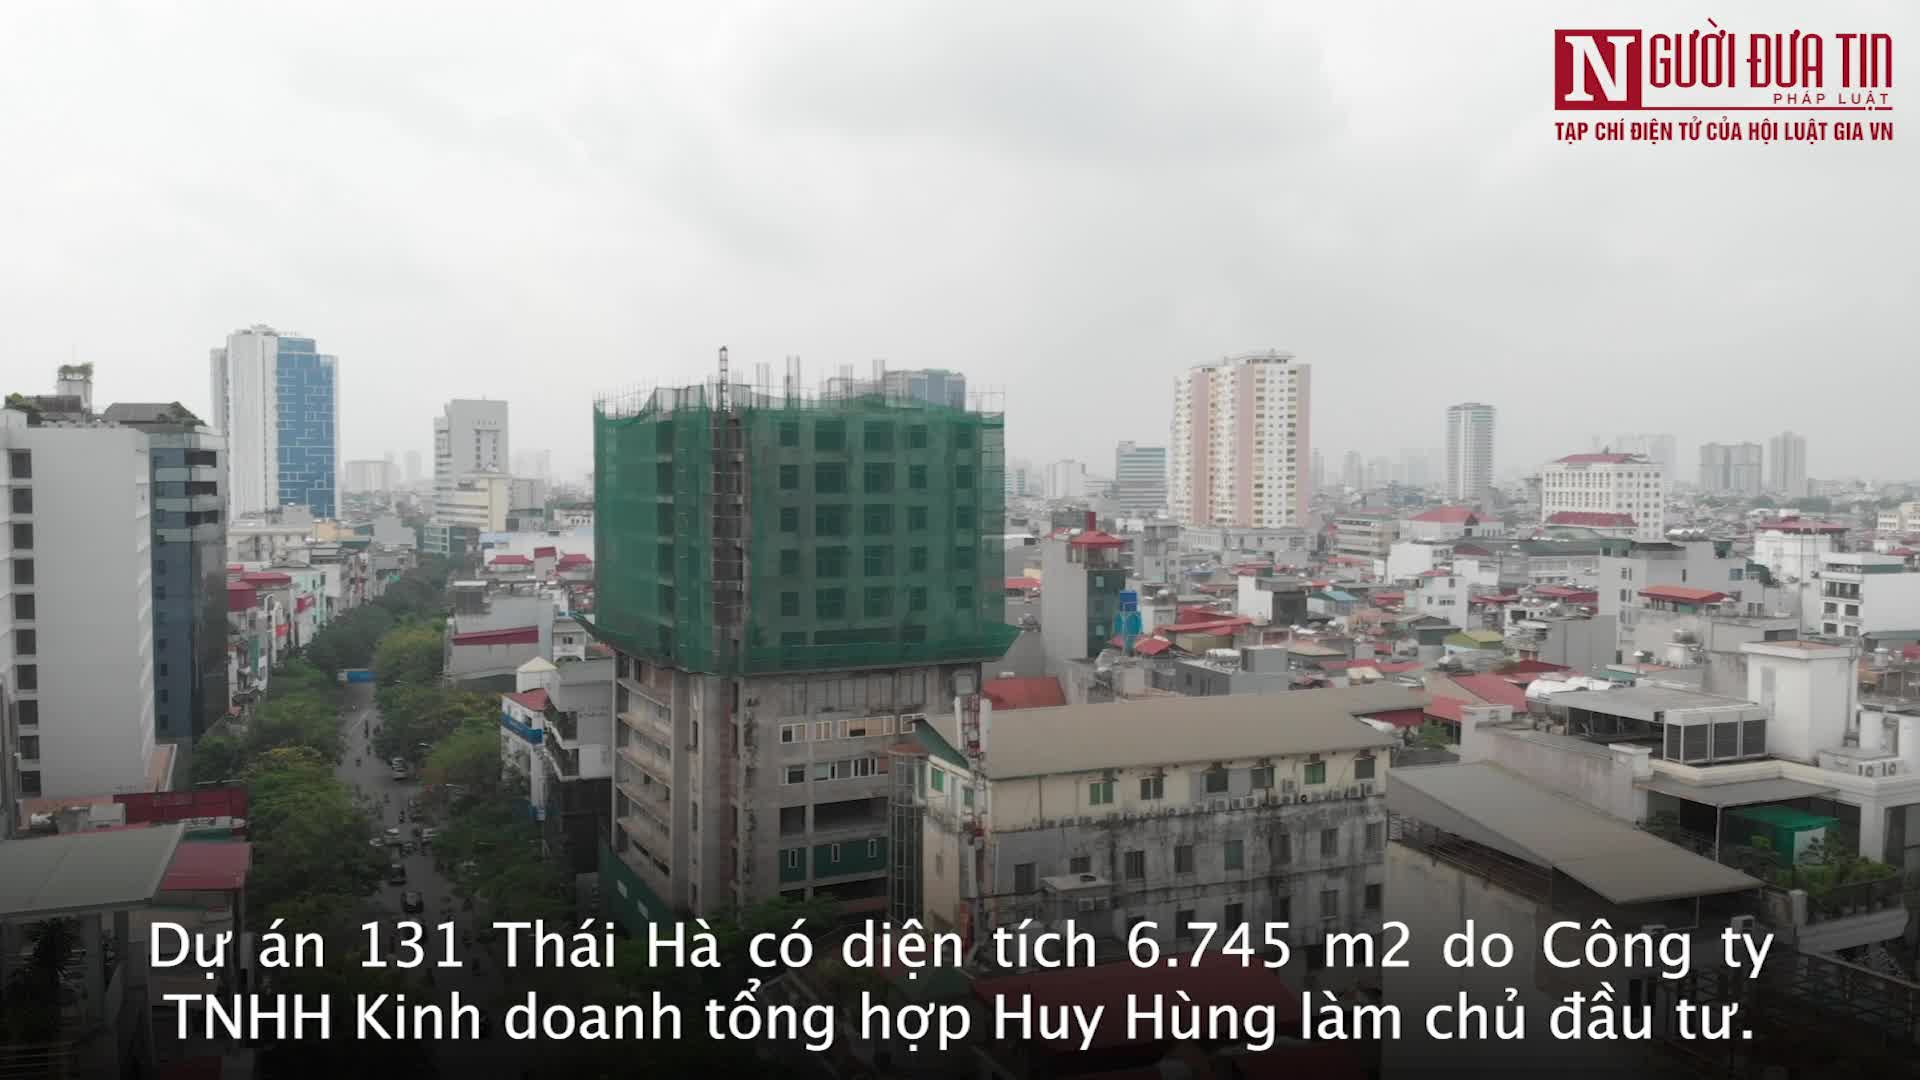 Bất động sản - Cận cảnh dự án cao ốc 131 Thái Hà sau hơn 1 thập kỷ